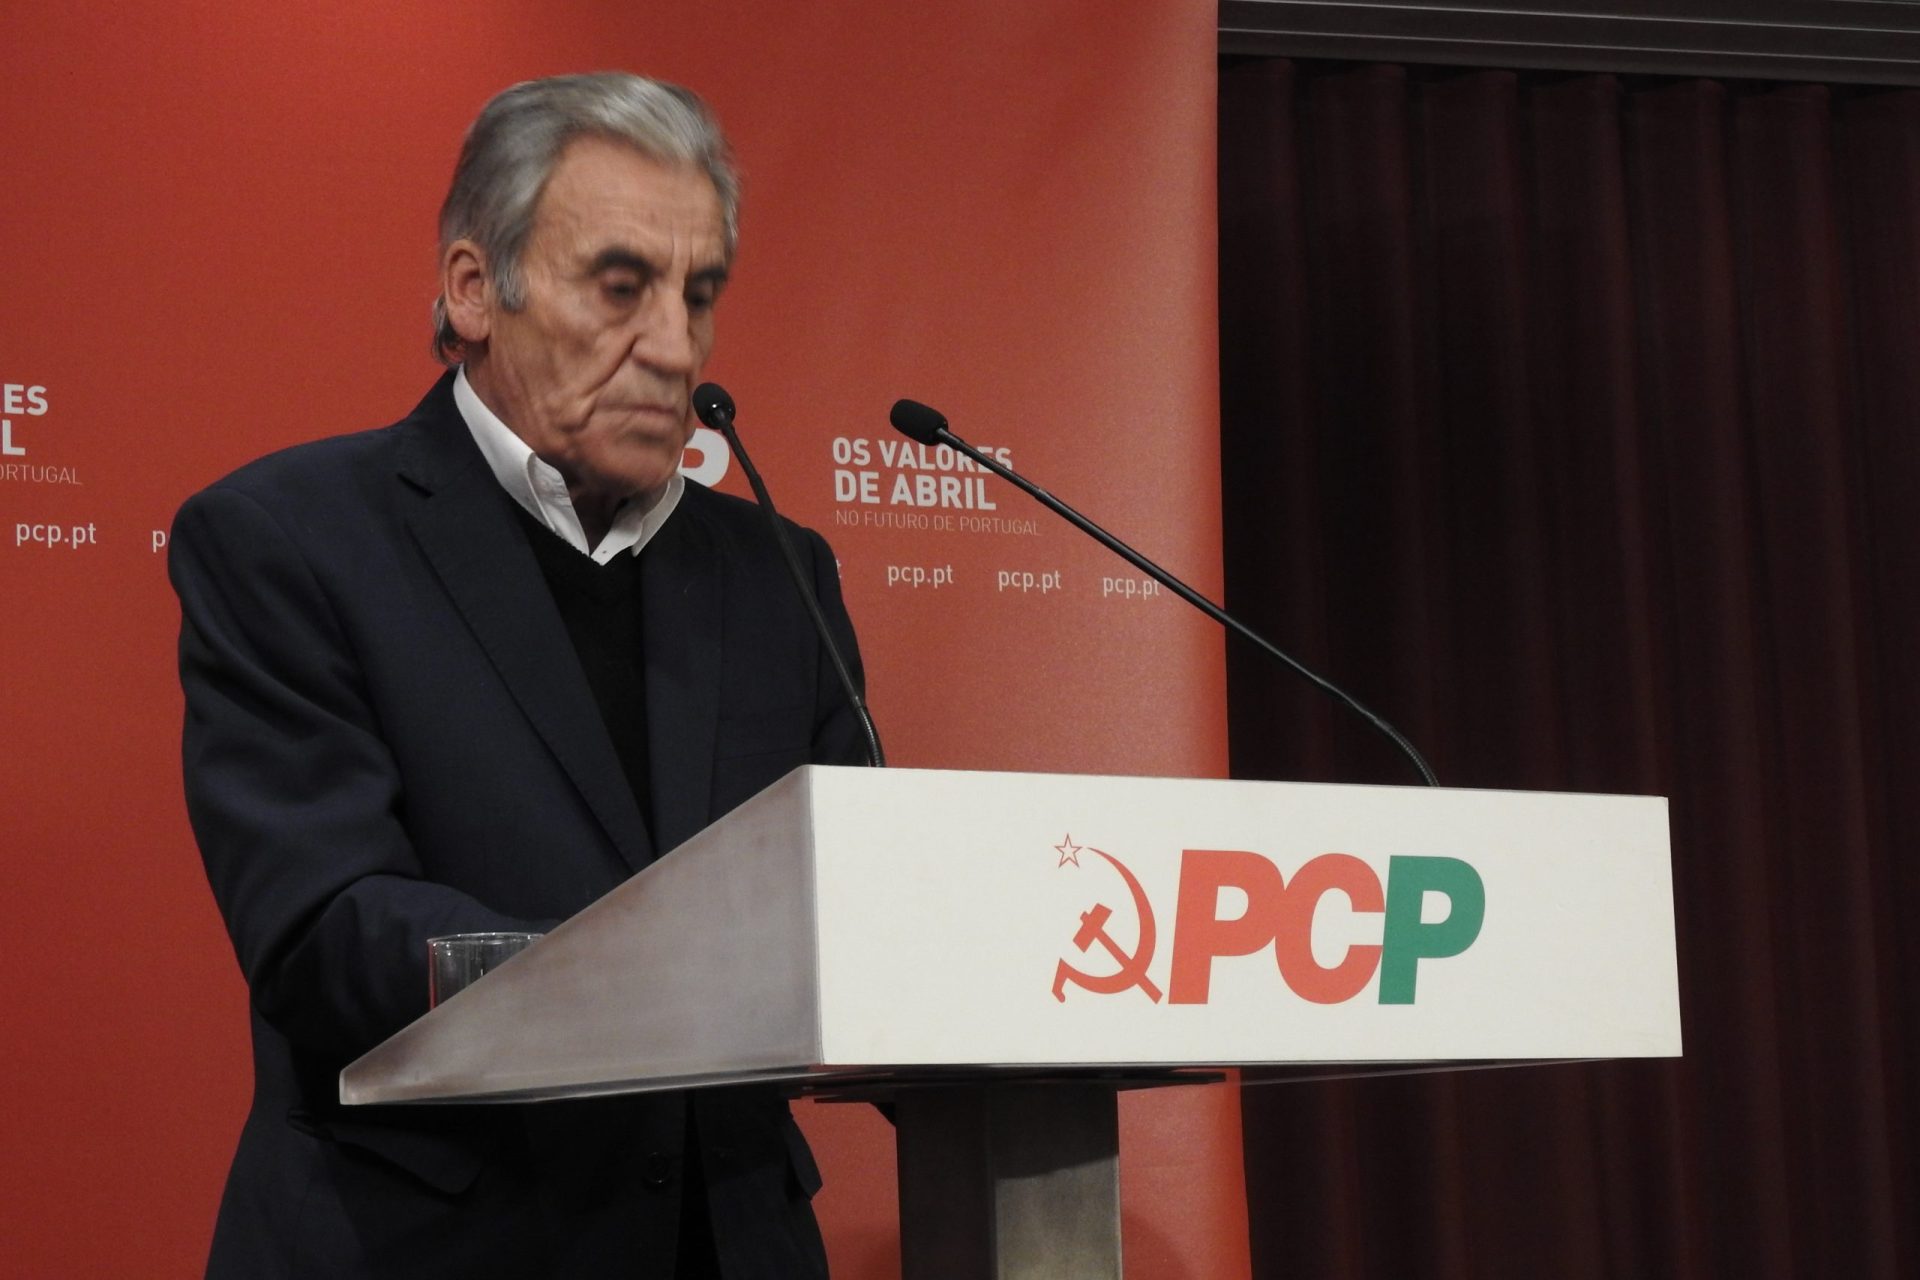 Jerónimo de Sousa reitera exigência de salário mínimo de 650 euros